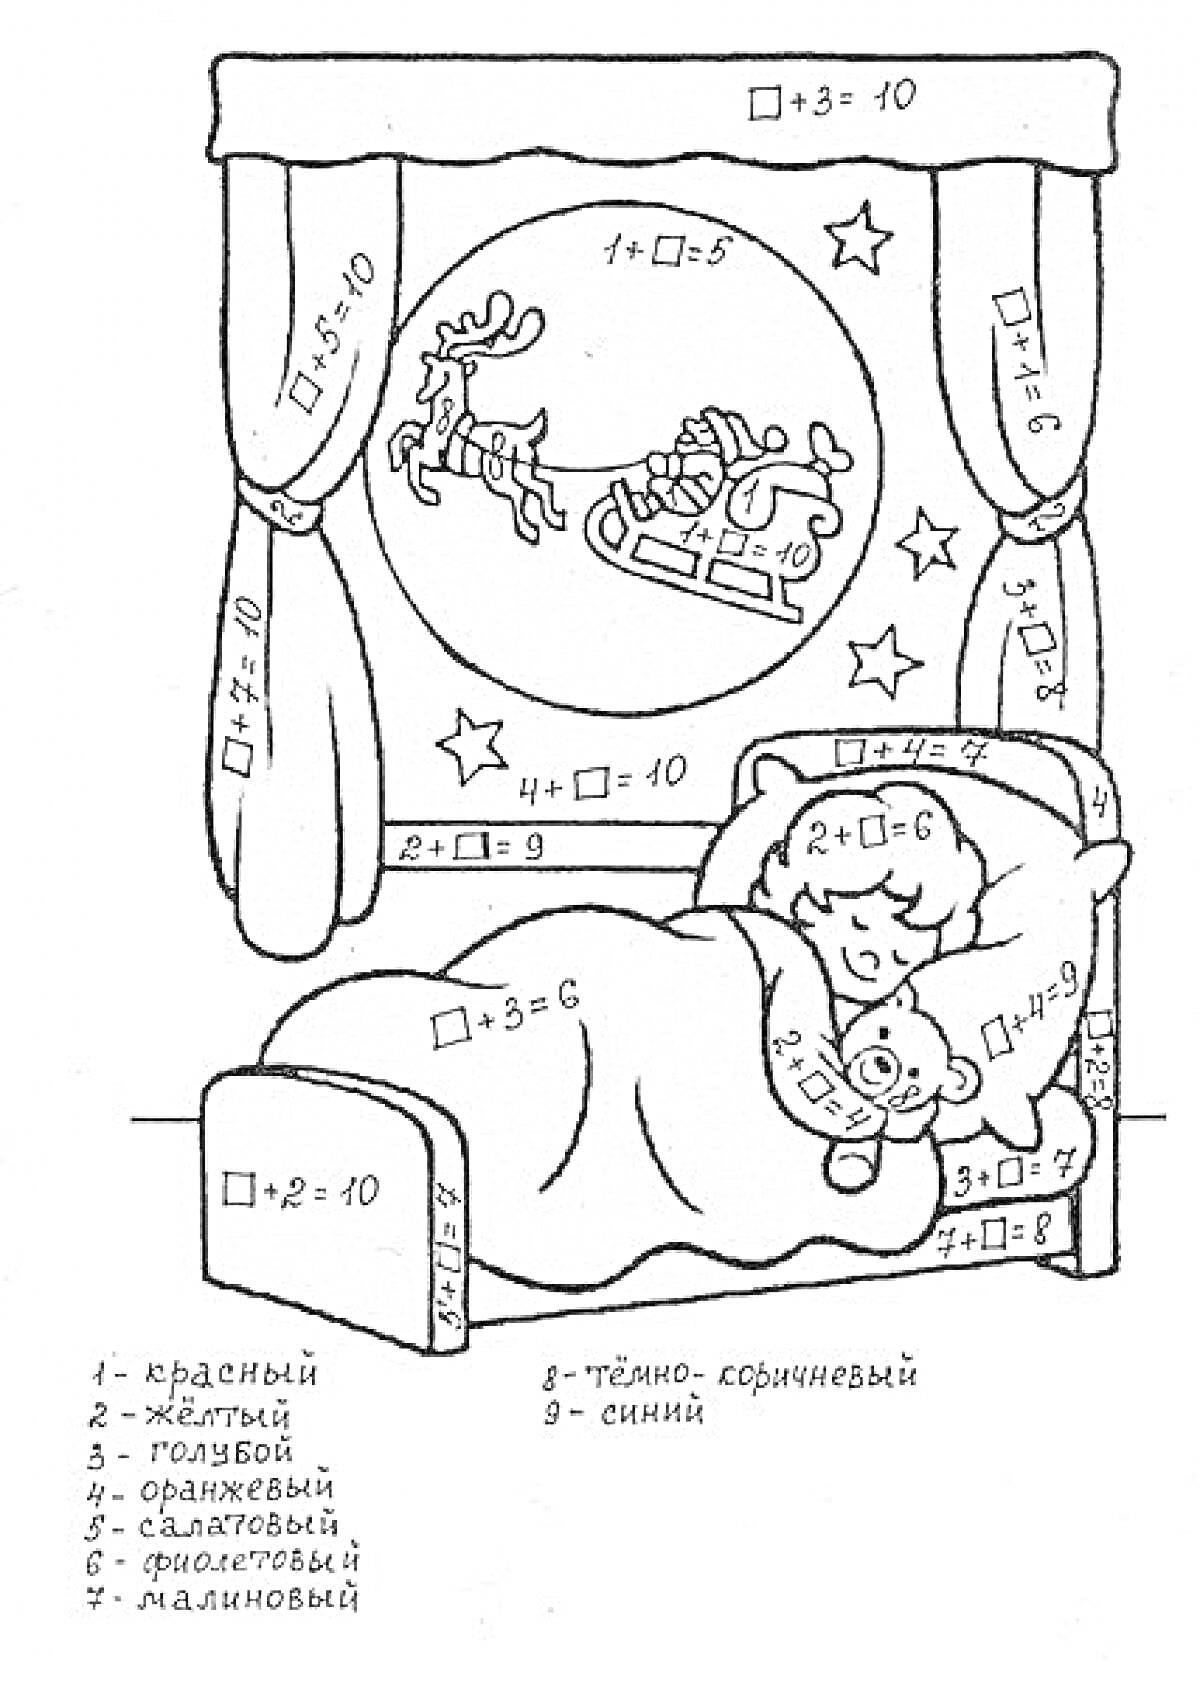 РаскраскаРебенок, спящий в кровати с плюшевым мишкой, у окна с санями Деда Мороза и занавесками; примеры в квадратных скобках и цветовая легенда